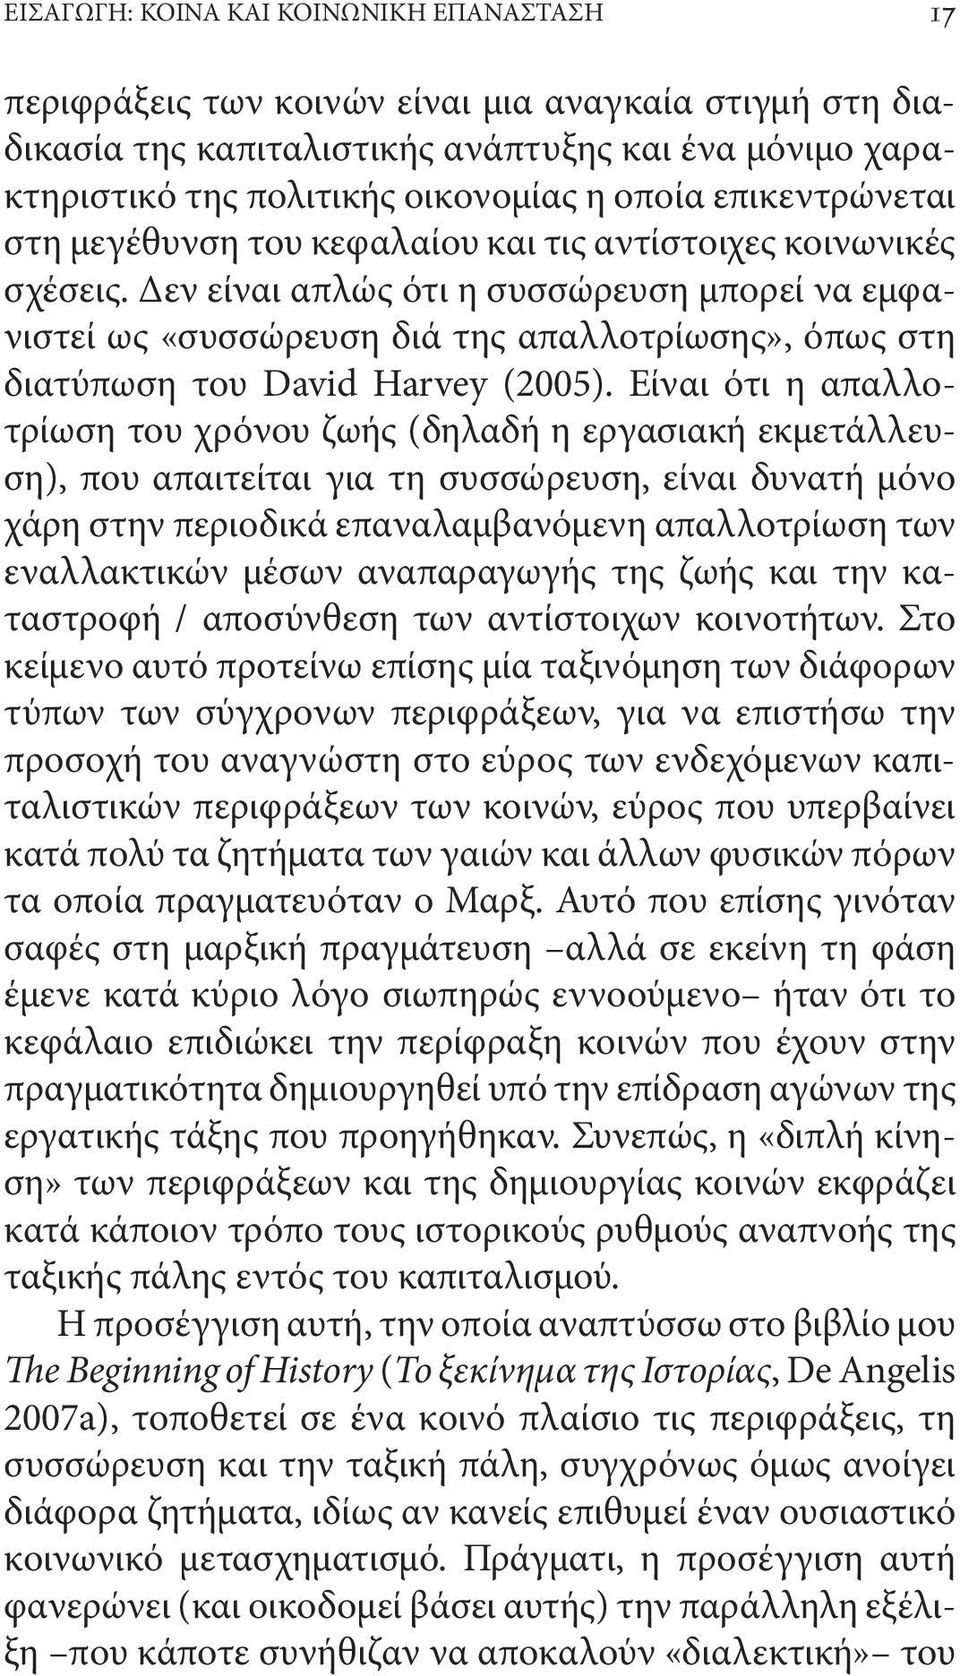 Δεν είναι απλώς ότι η συσσώρευση μπορεί να εμφανιστεί ως «συσσώρευση διά της απαλλοτρίωσης», όπως στη διατύπωση του David Harvey (2005).